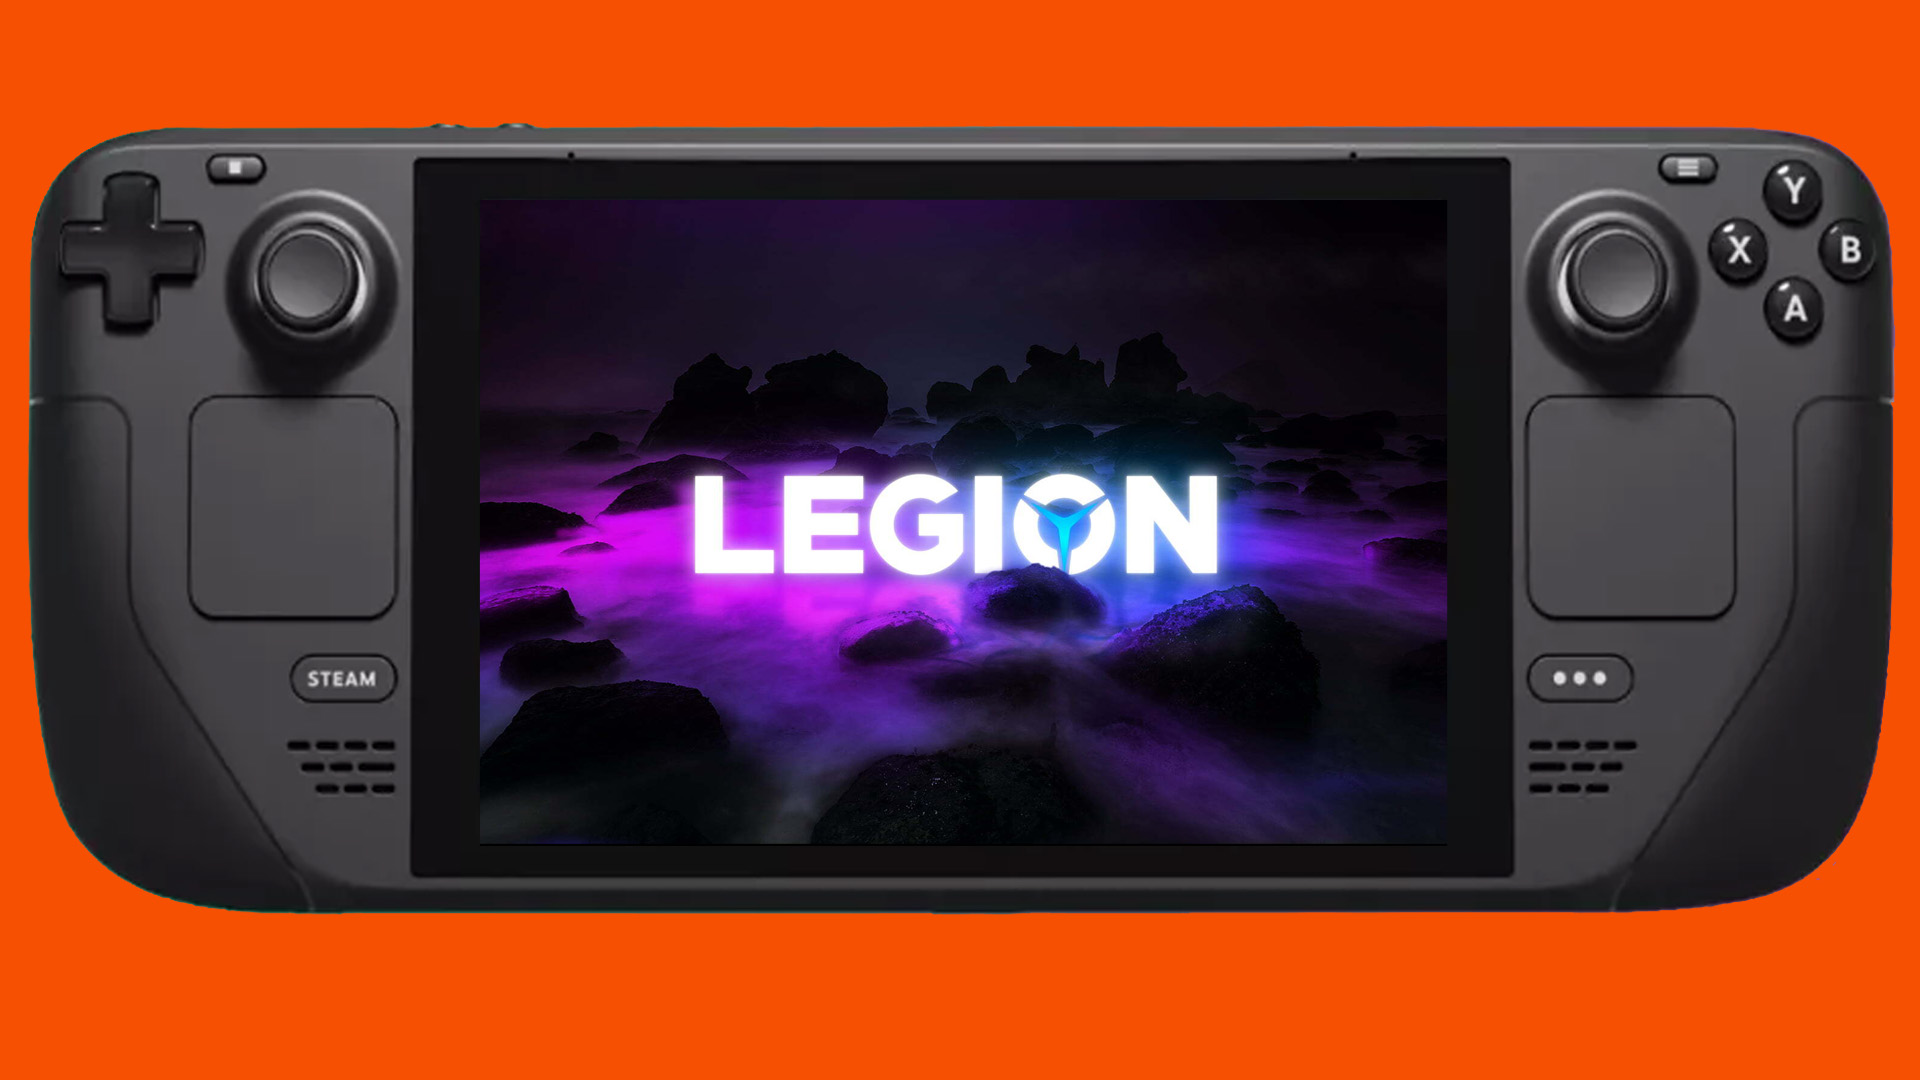 Lenovo Legion Go-afbeeldingen onthullen een Nintendo Switch-achtige Steam Deck-concurrent